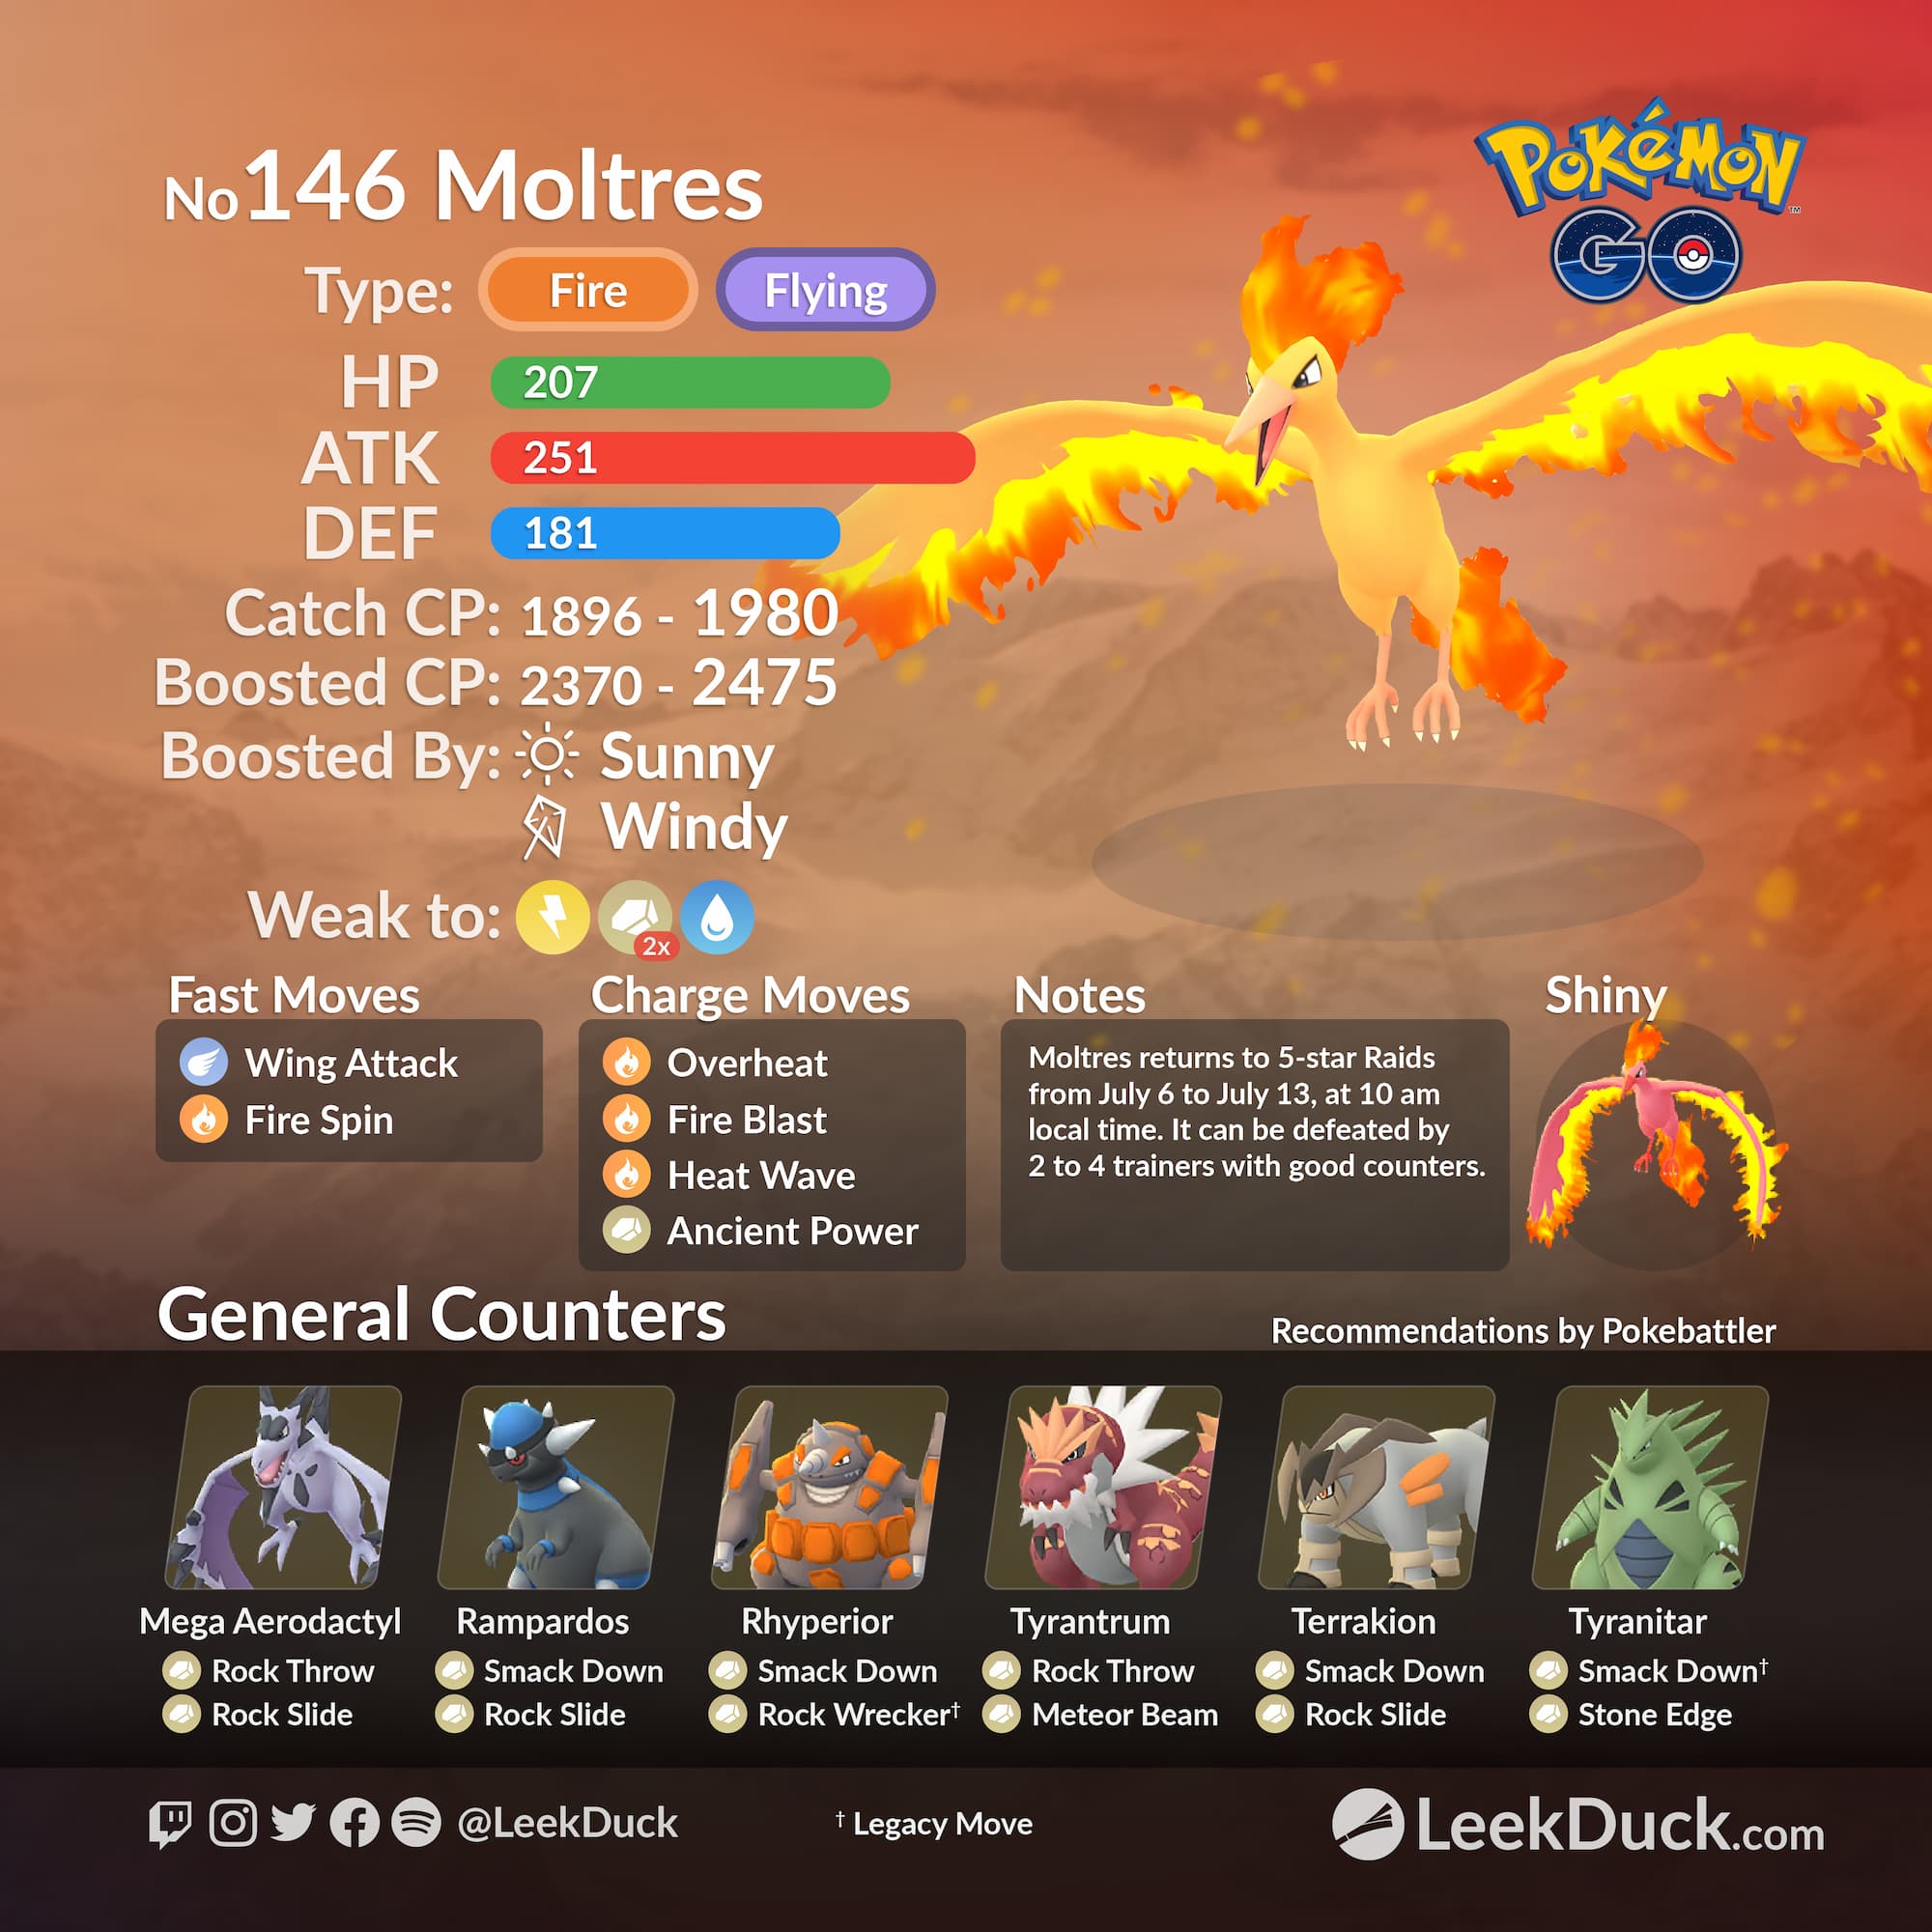 All Pokémon available in Pokémon GO raids: full list (January 2023) -  Meristation